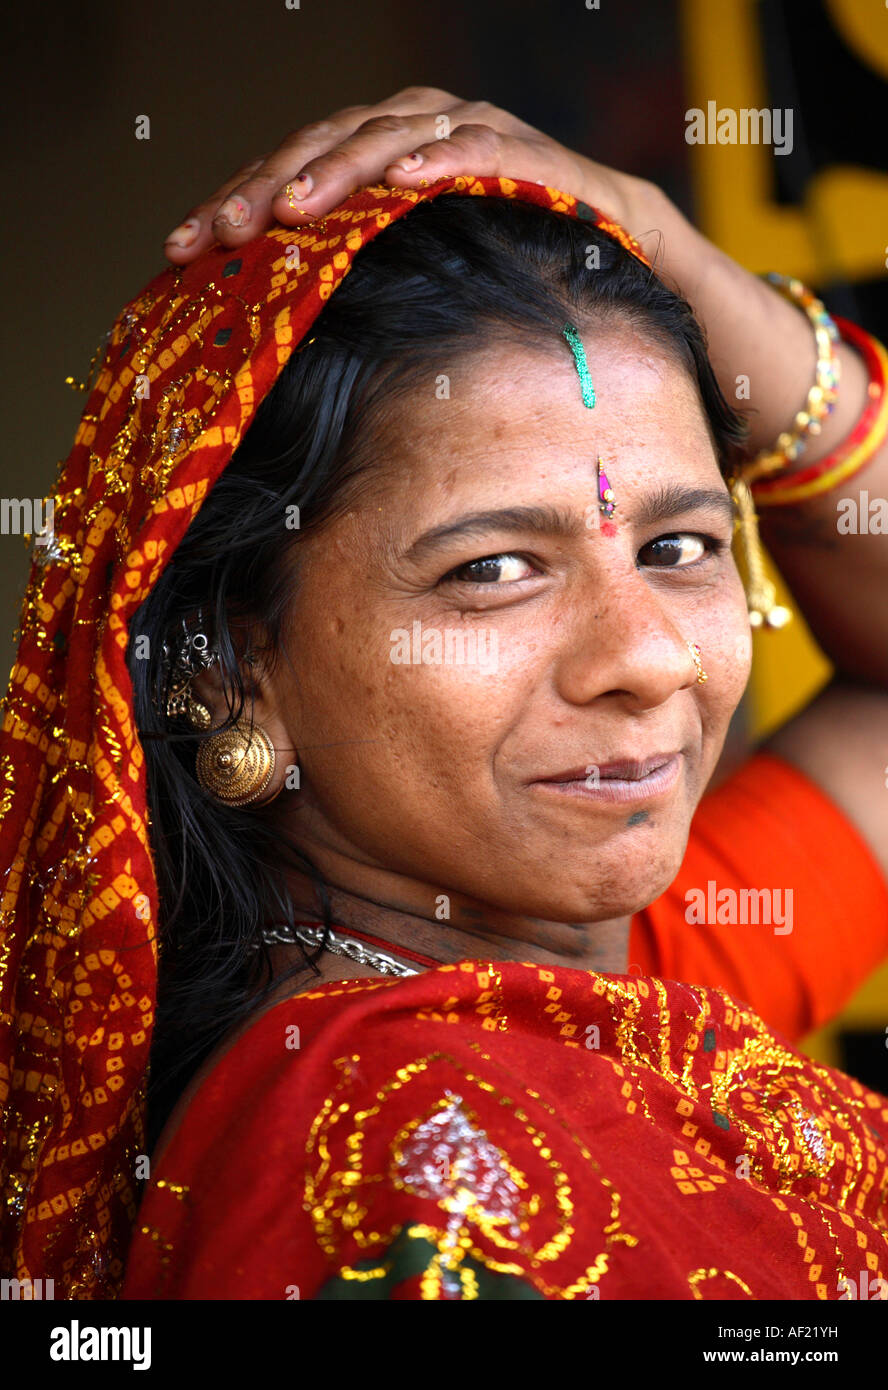 Smiling Rabari Tribal woman in Una, Gujarat, India Stock Photo